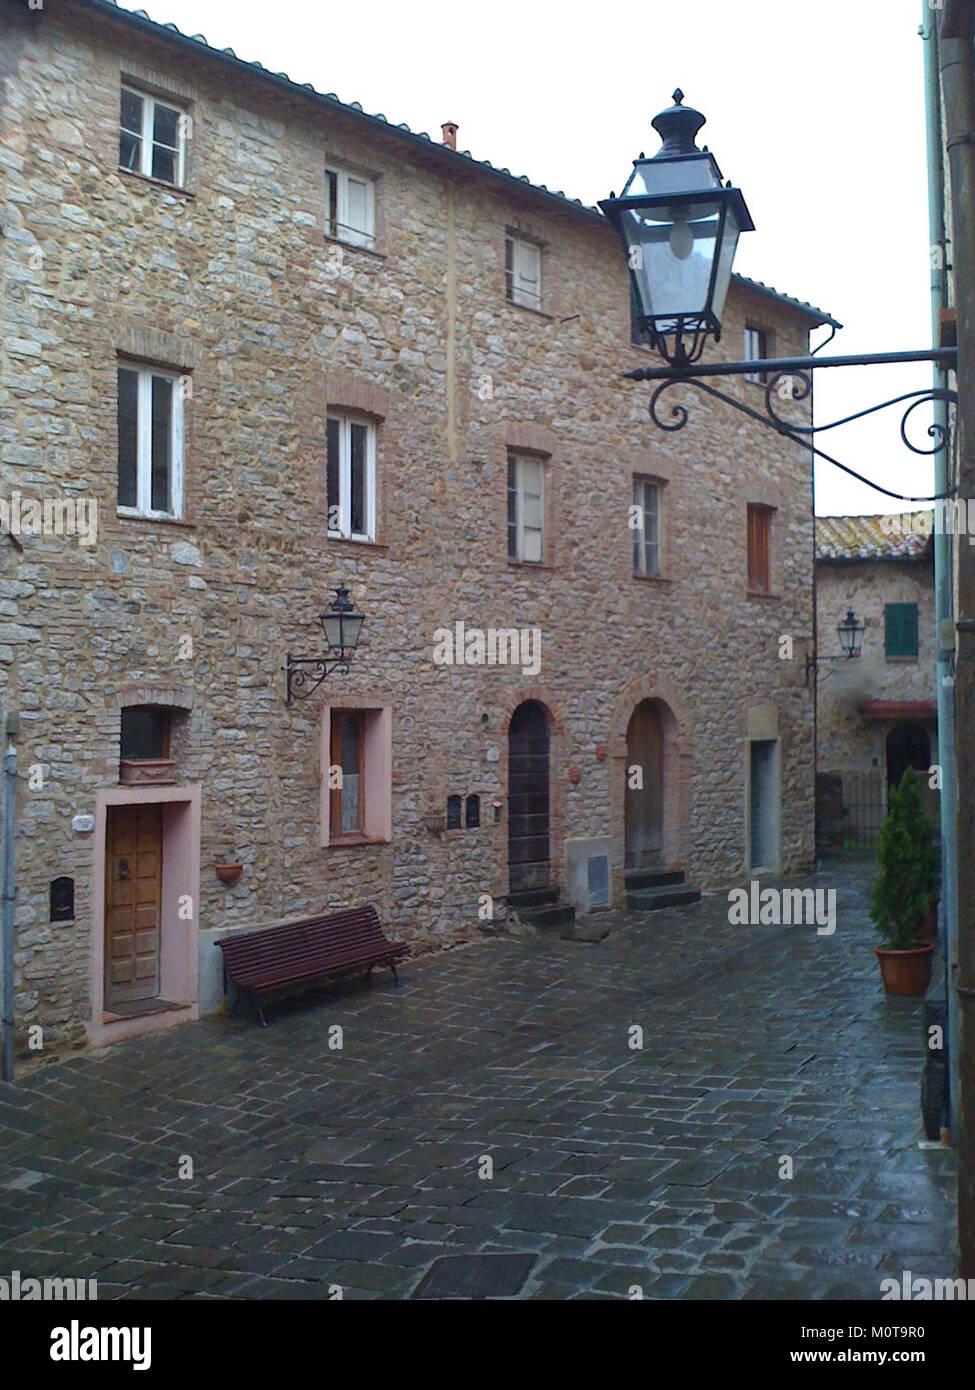 Castello Medievale di Sasso Pisano, piazza centrale Stock Photo